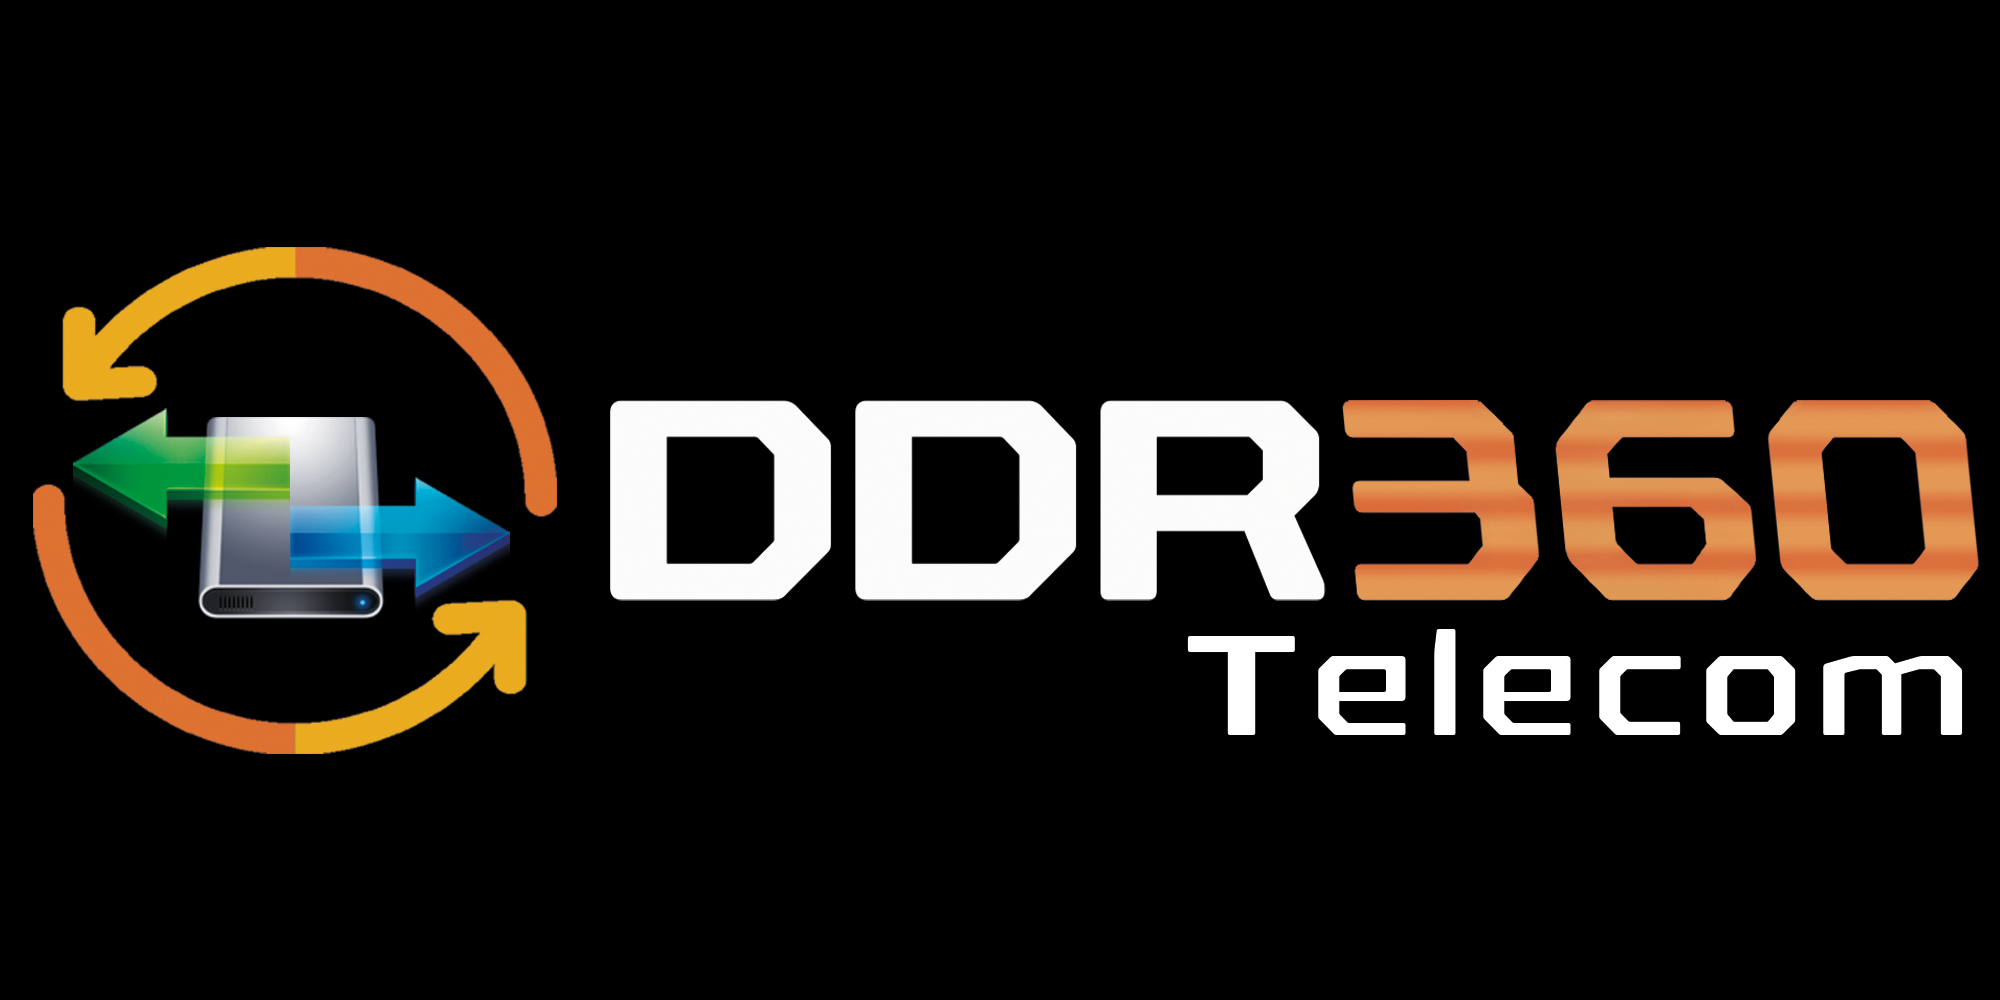 DDR360 Telecom